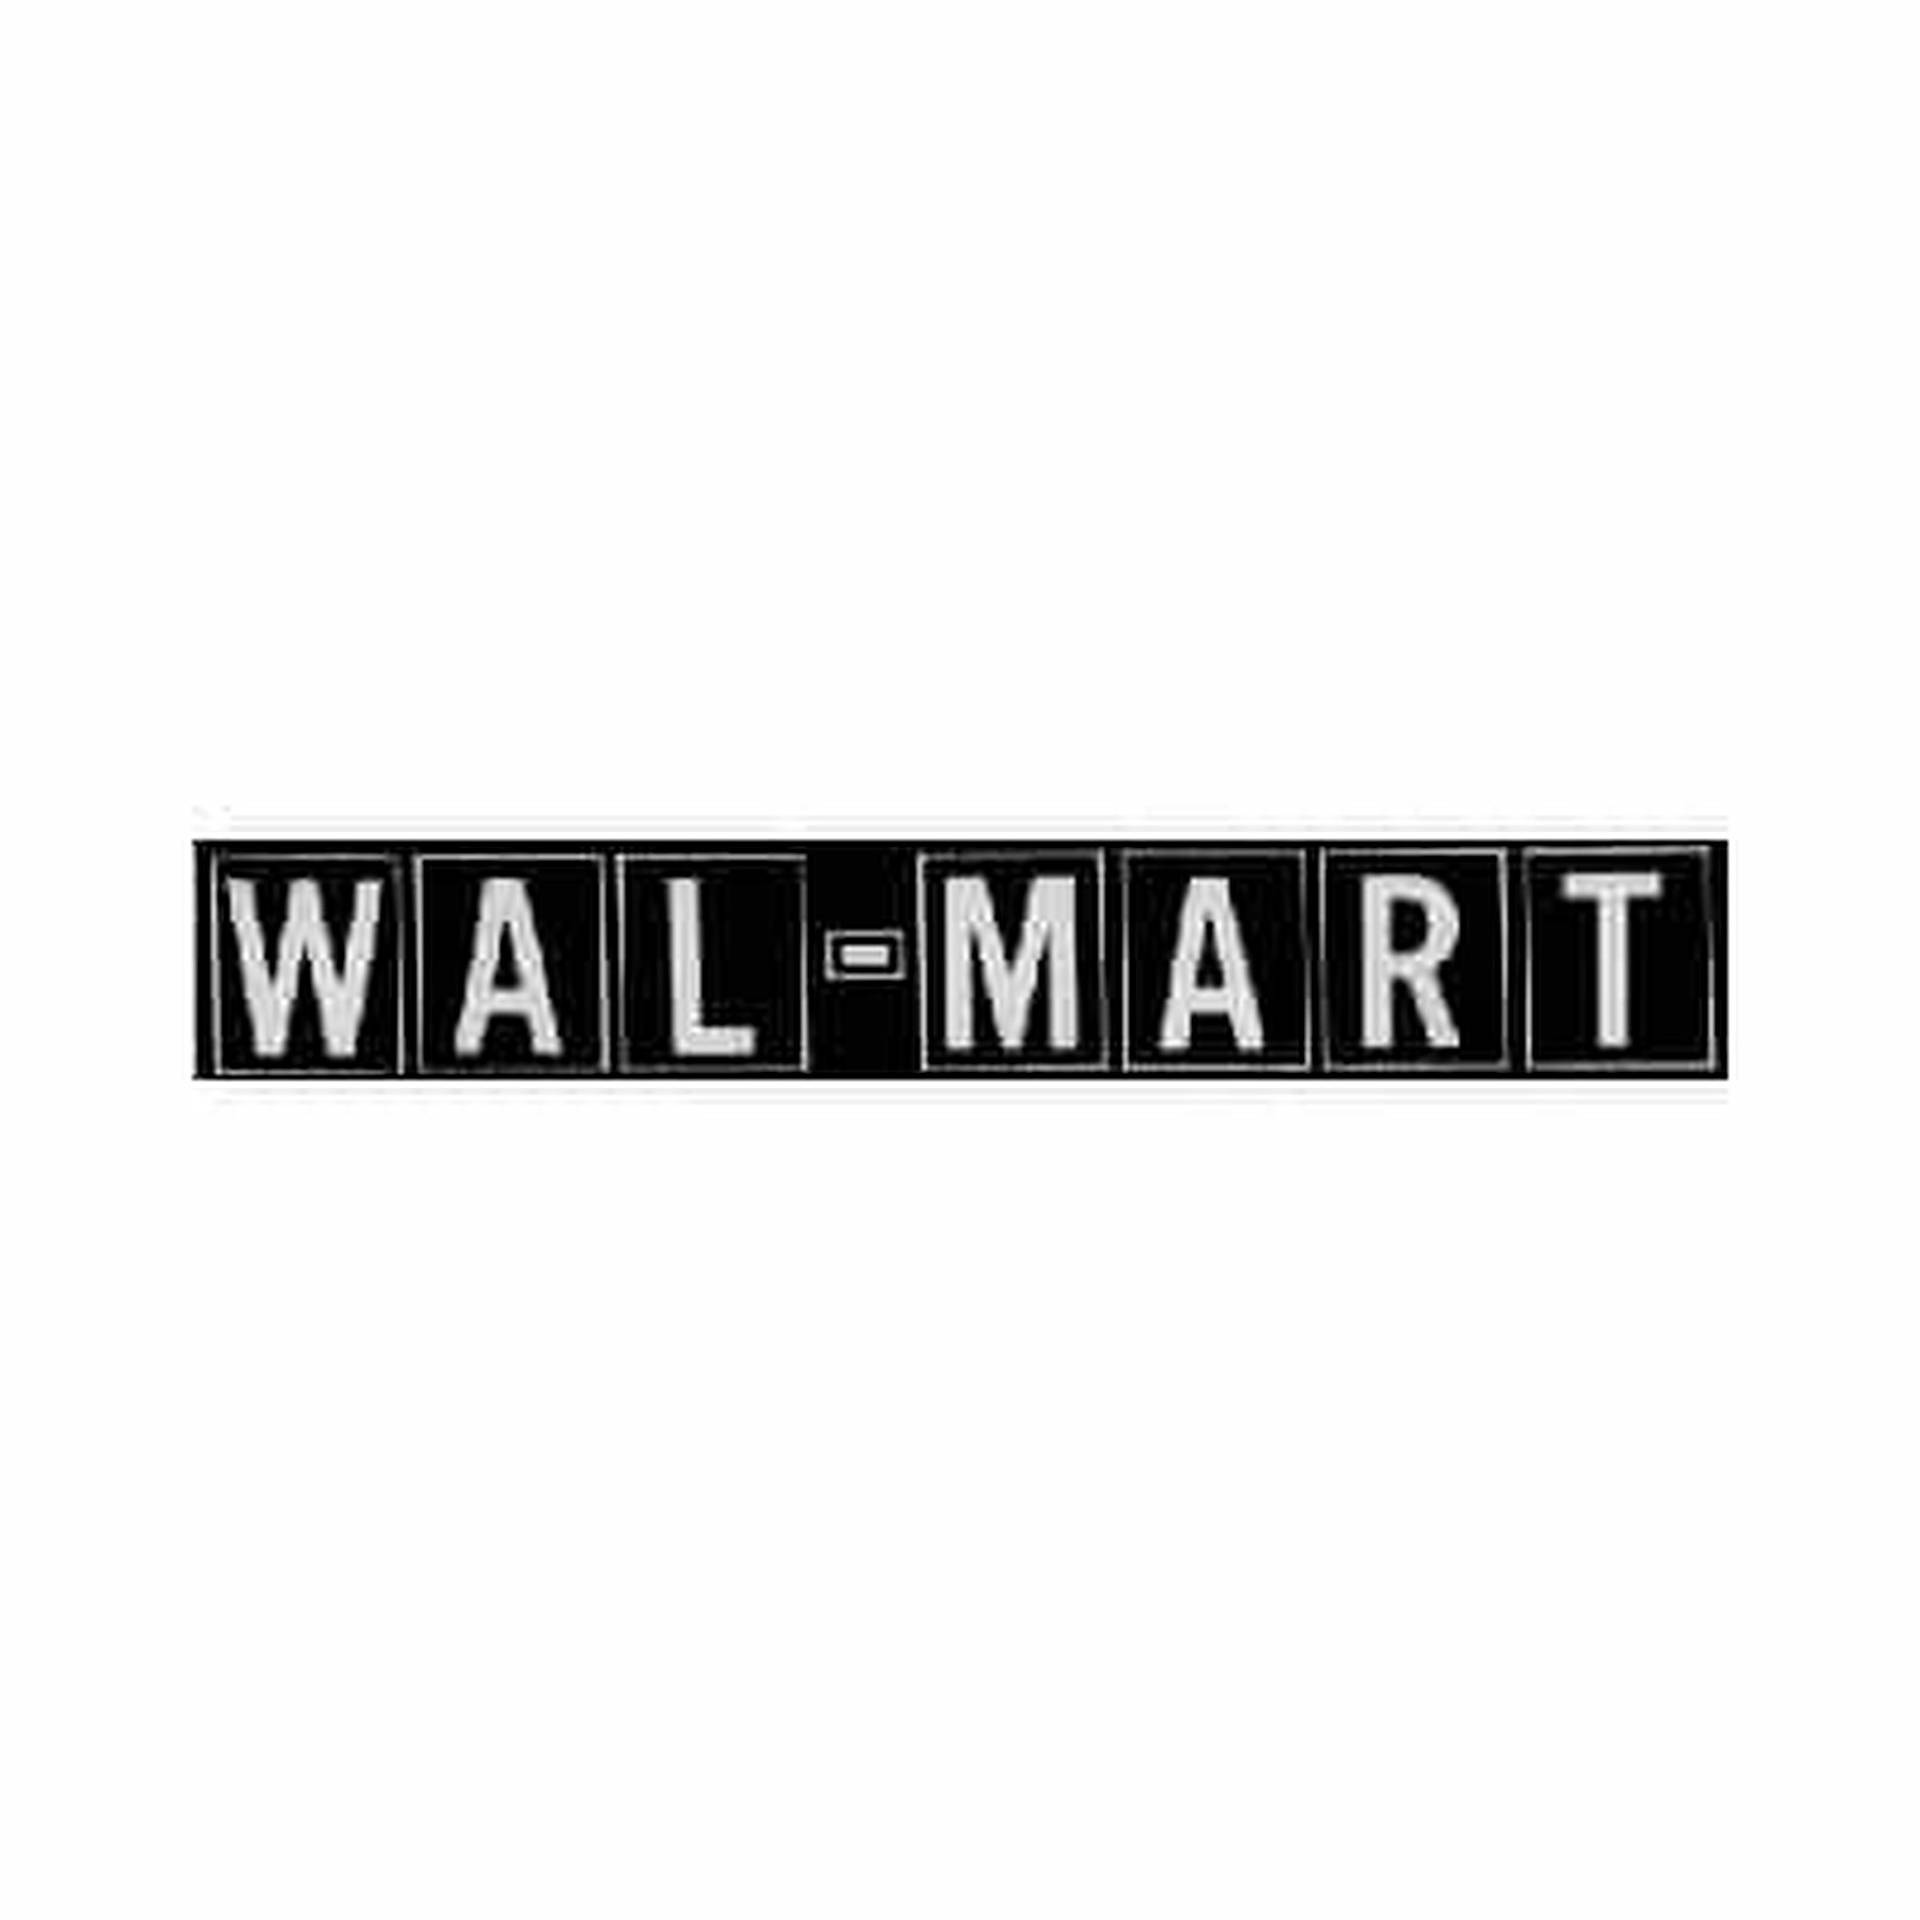 Fondode Pantalla De Walmart Con El Antiguo Logotipo. Fondo de pantalla